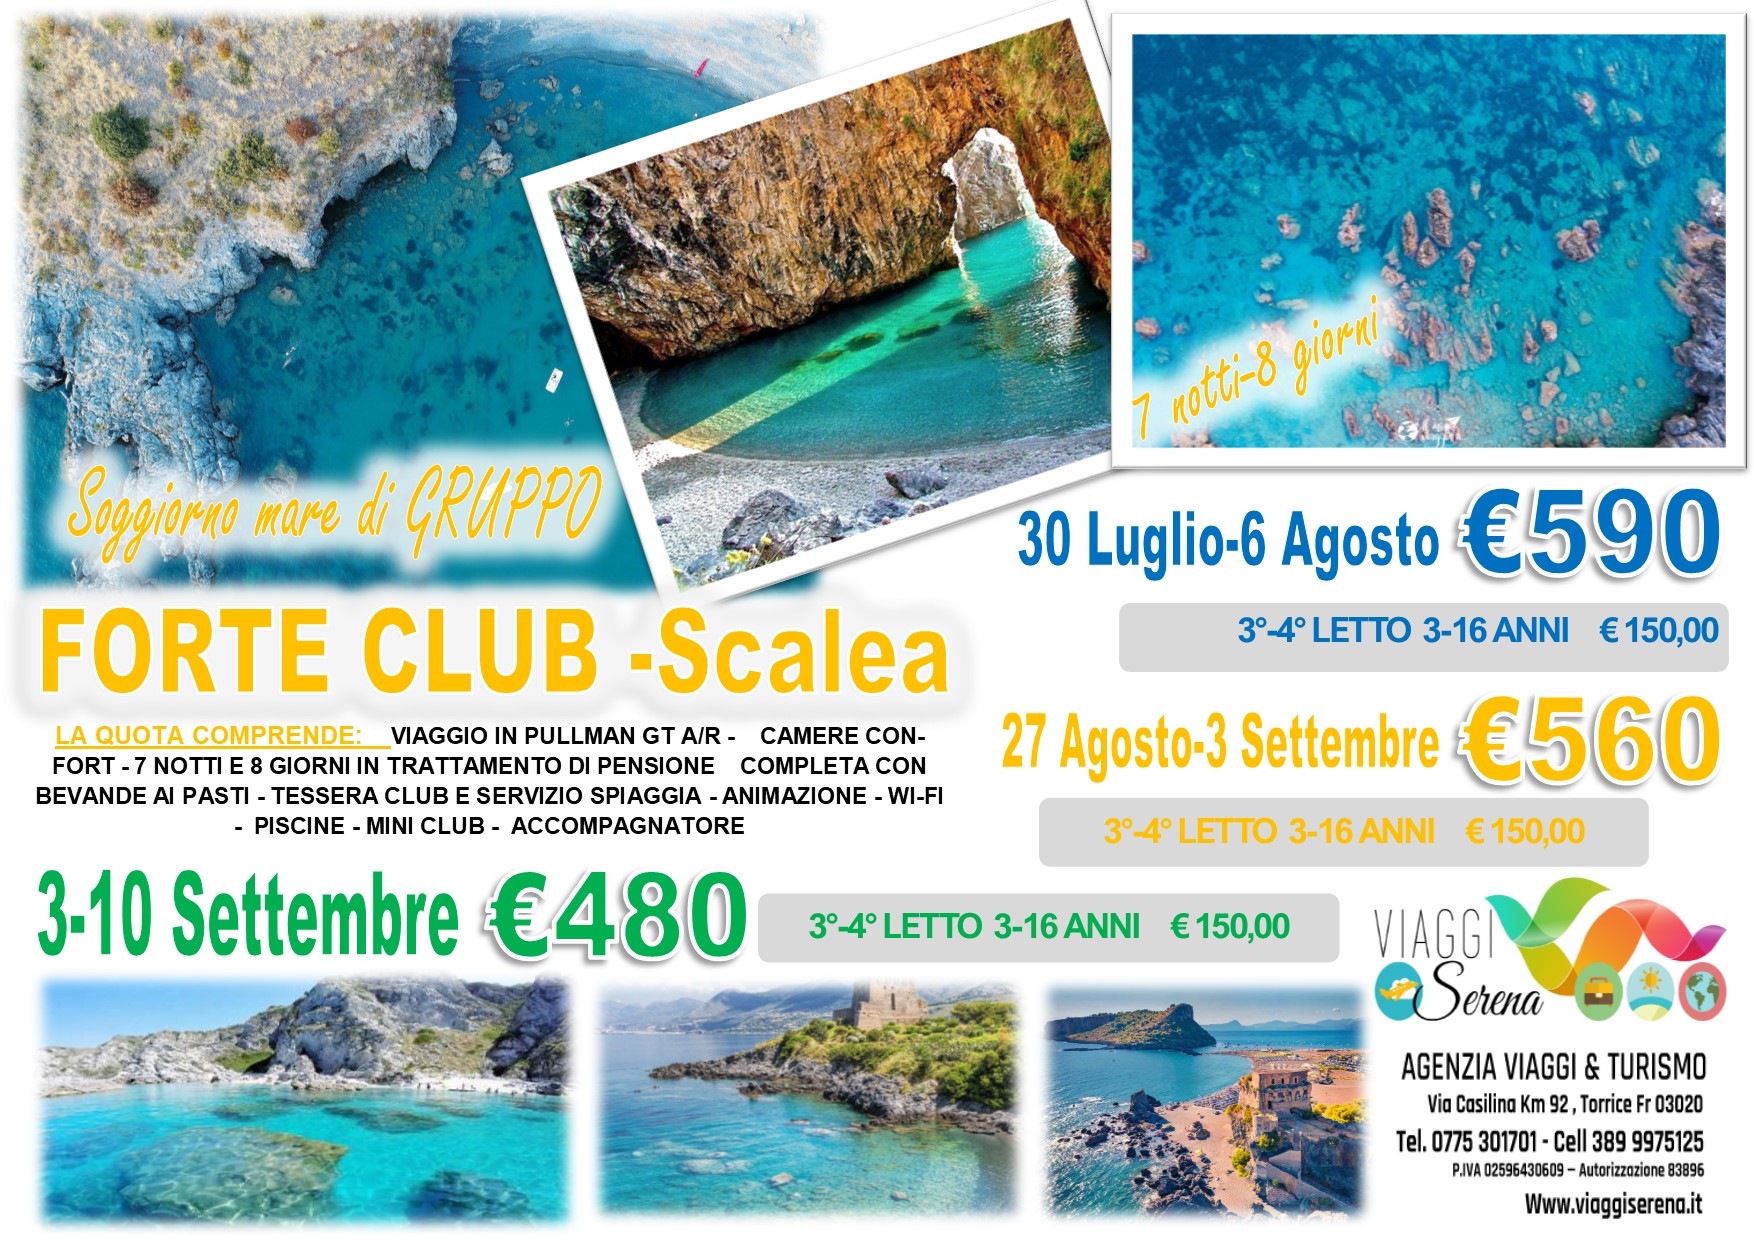 Viaggi di Gruppo: Soggiorno Mare “Villaggio Forte Club” Scalea 27 Agosto 3 Settembre €560,00